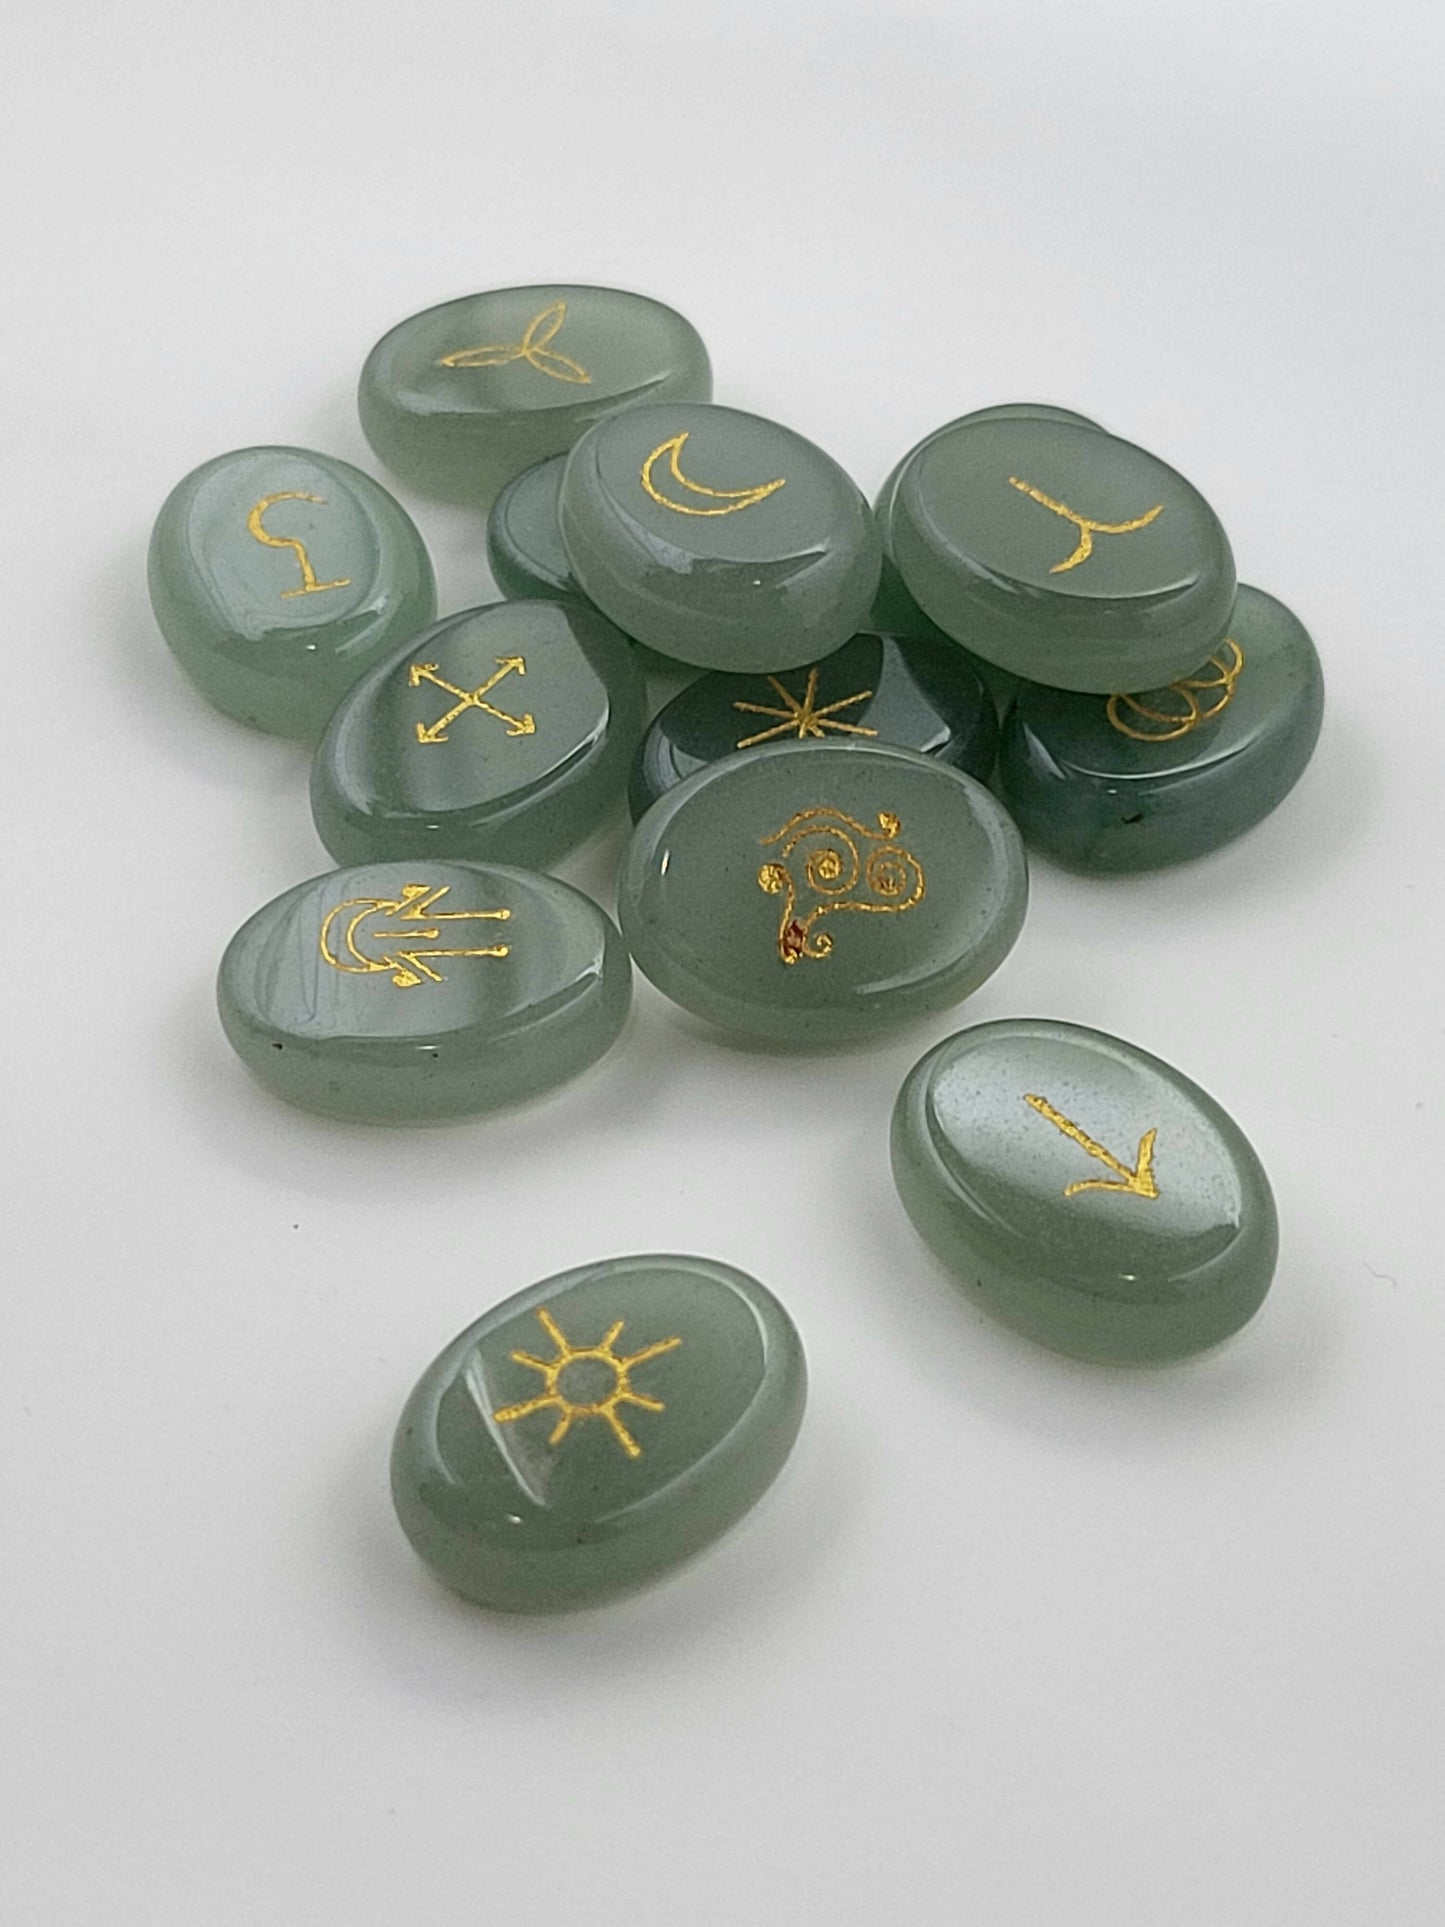 Gemstone Witches Runes